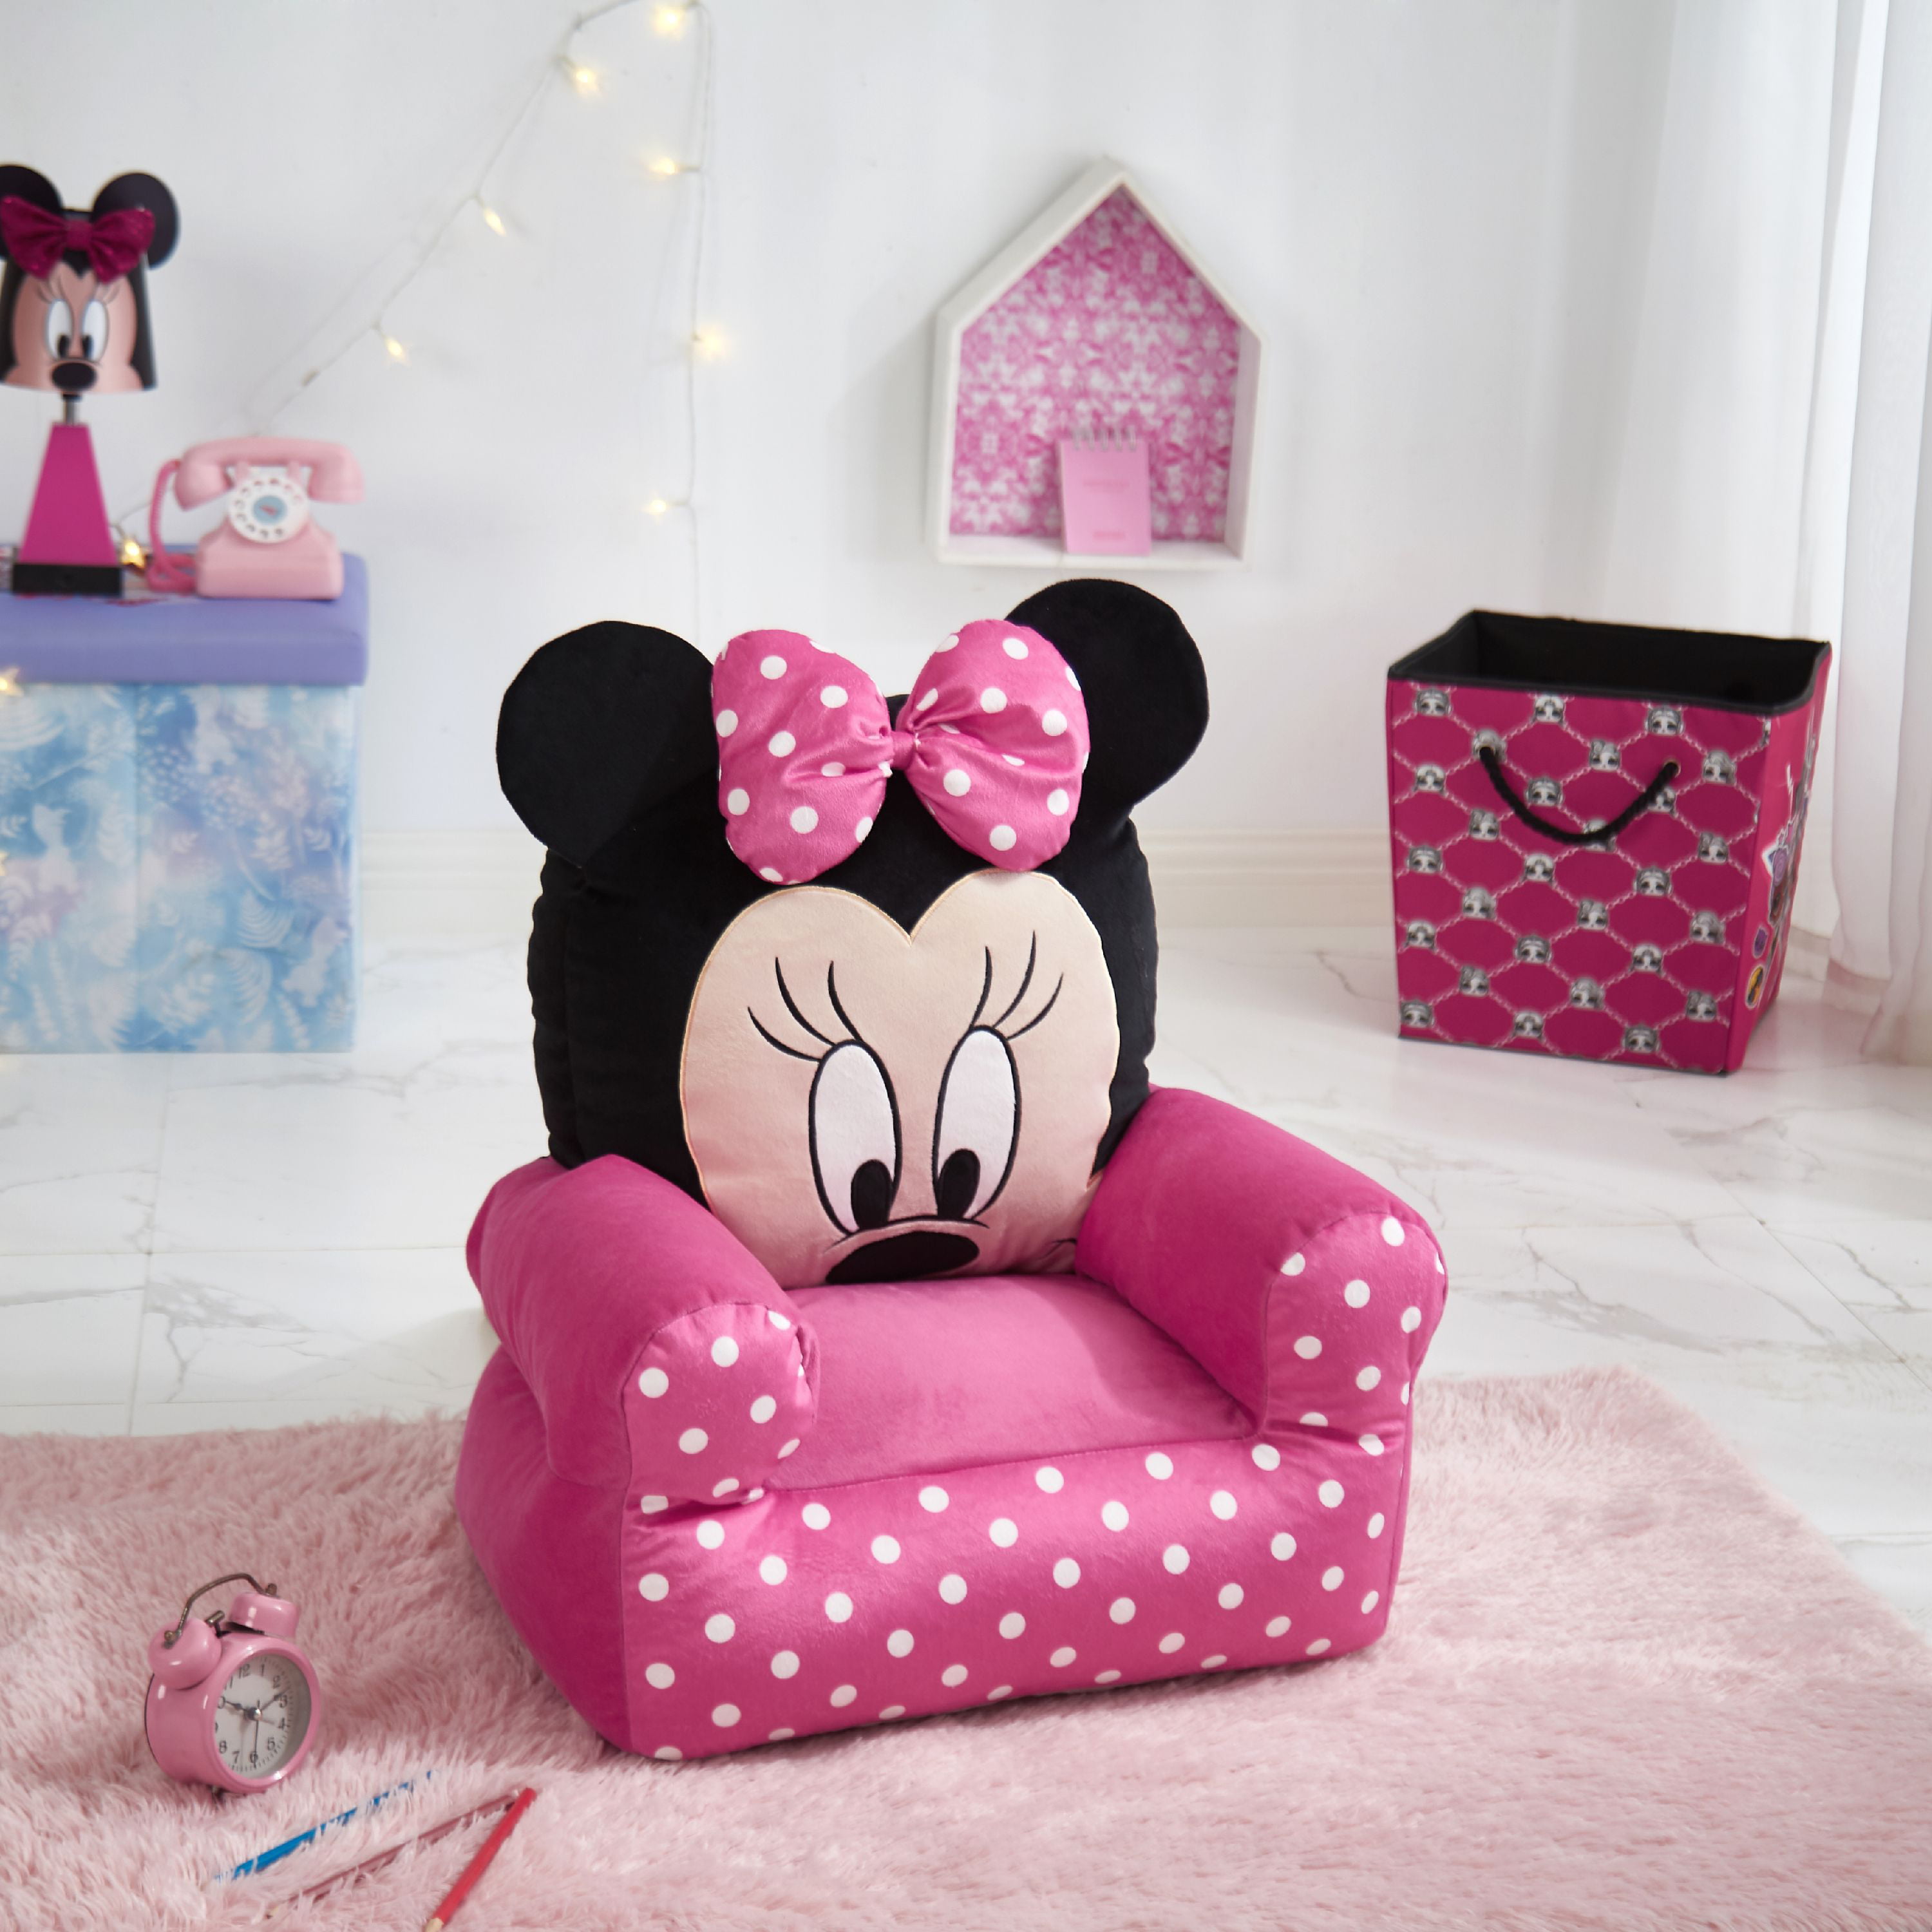 Minnie Mouse Plush Bean Bag Sofa Chair